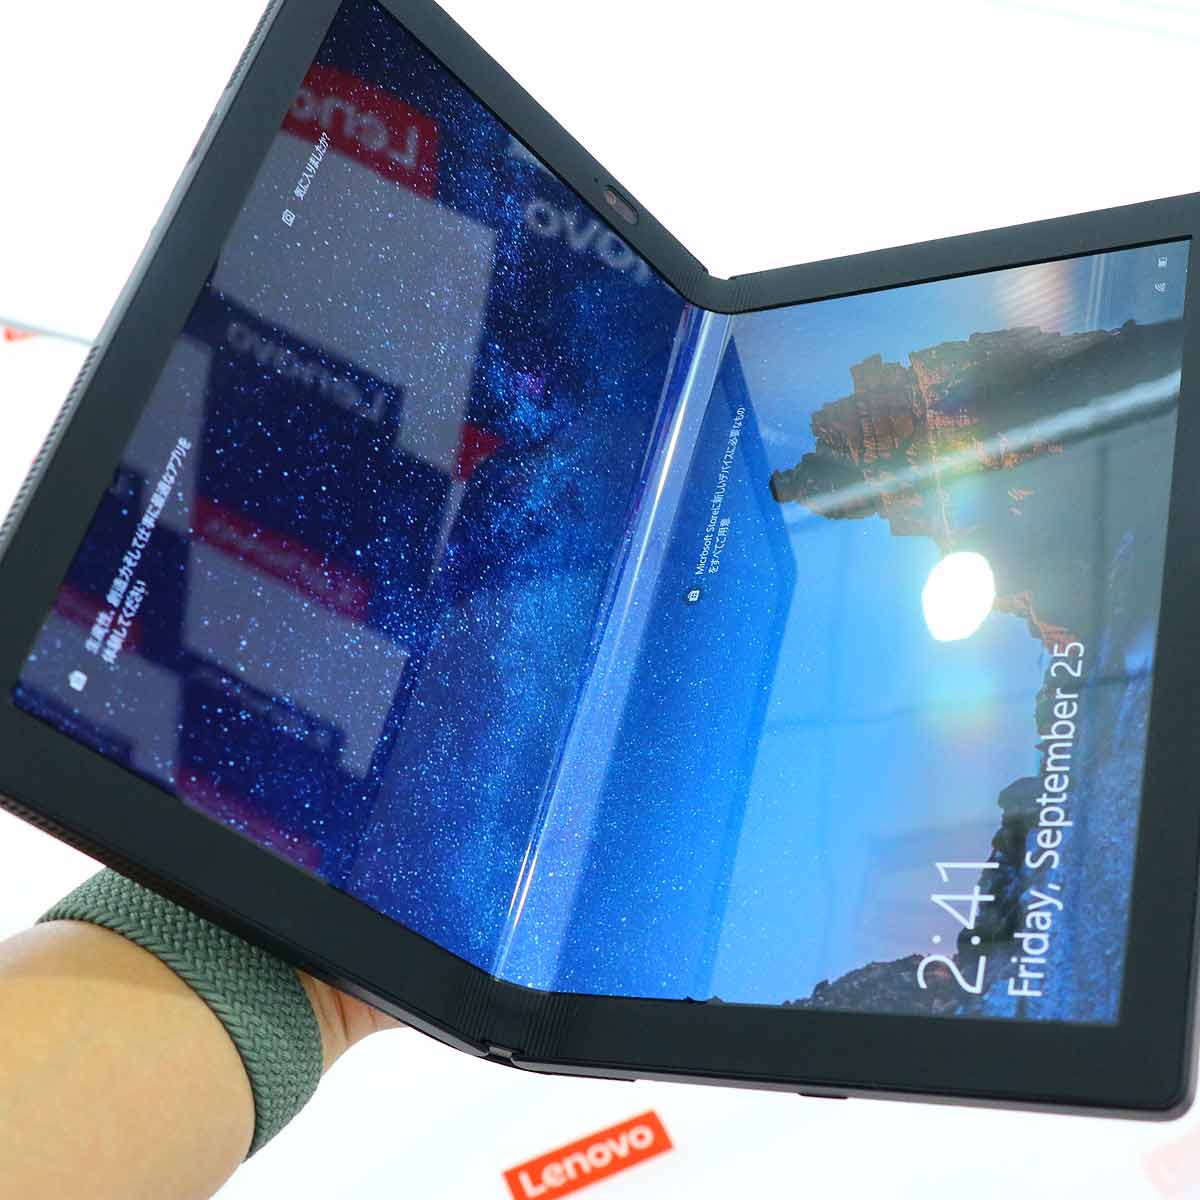 レノボのsimフリー版8インチタブレット Yoga Tablet 2 0l が売れ筋1位に返り咲き コストパフォーマンスの高さから人気が再燃中 価格 Comマガジン